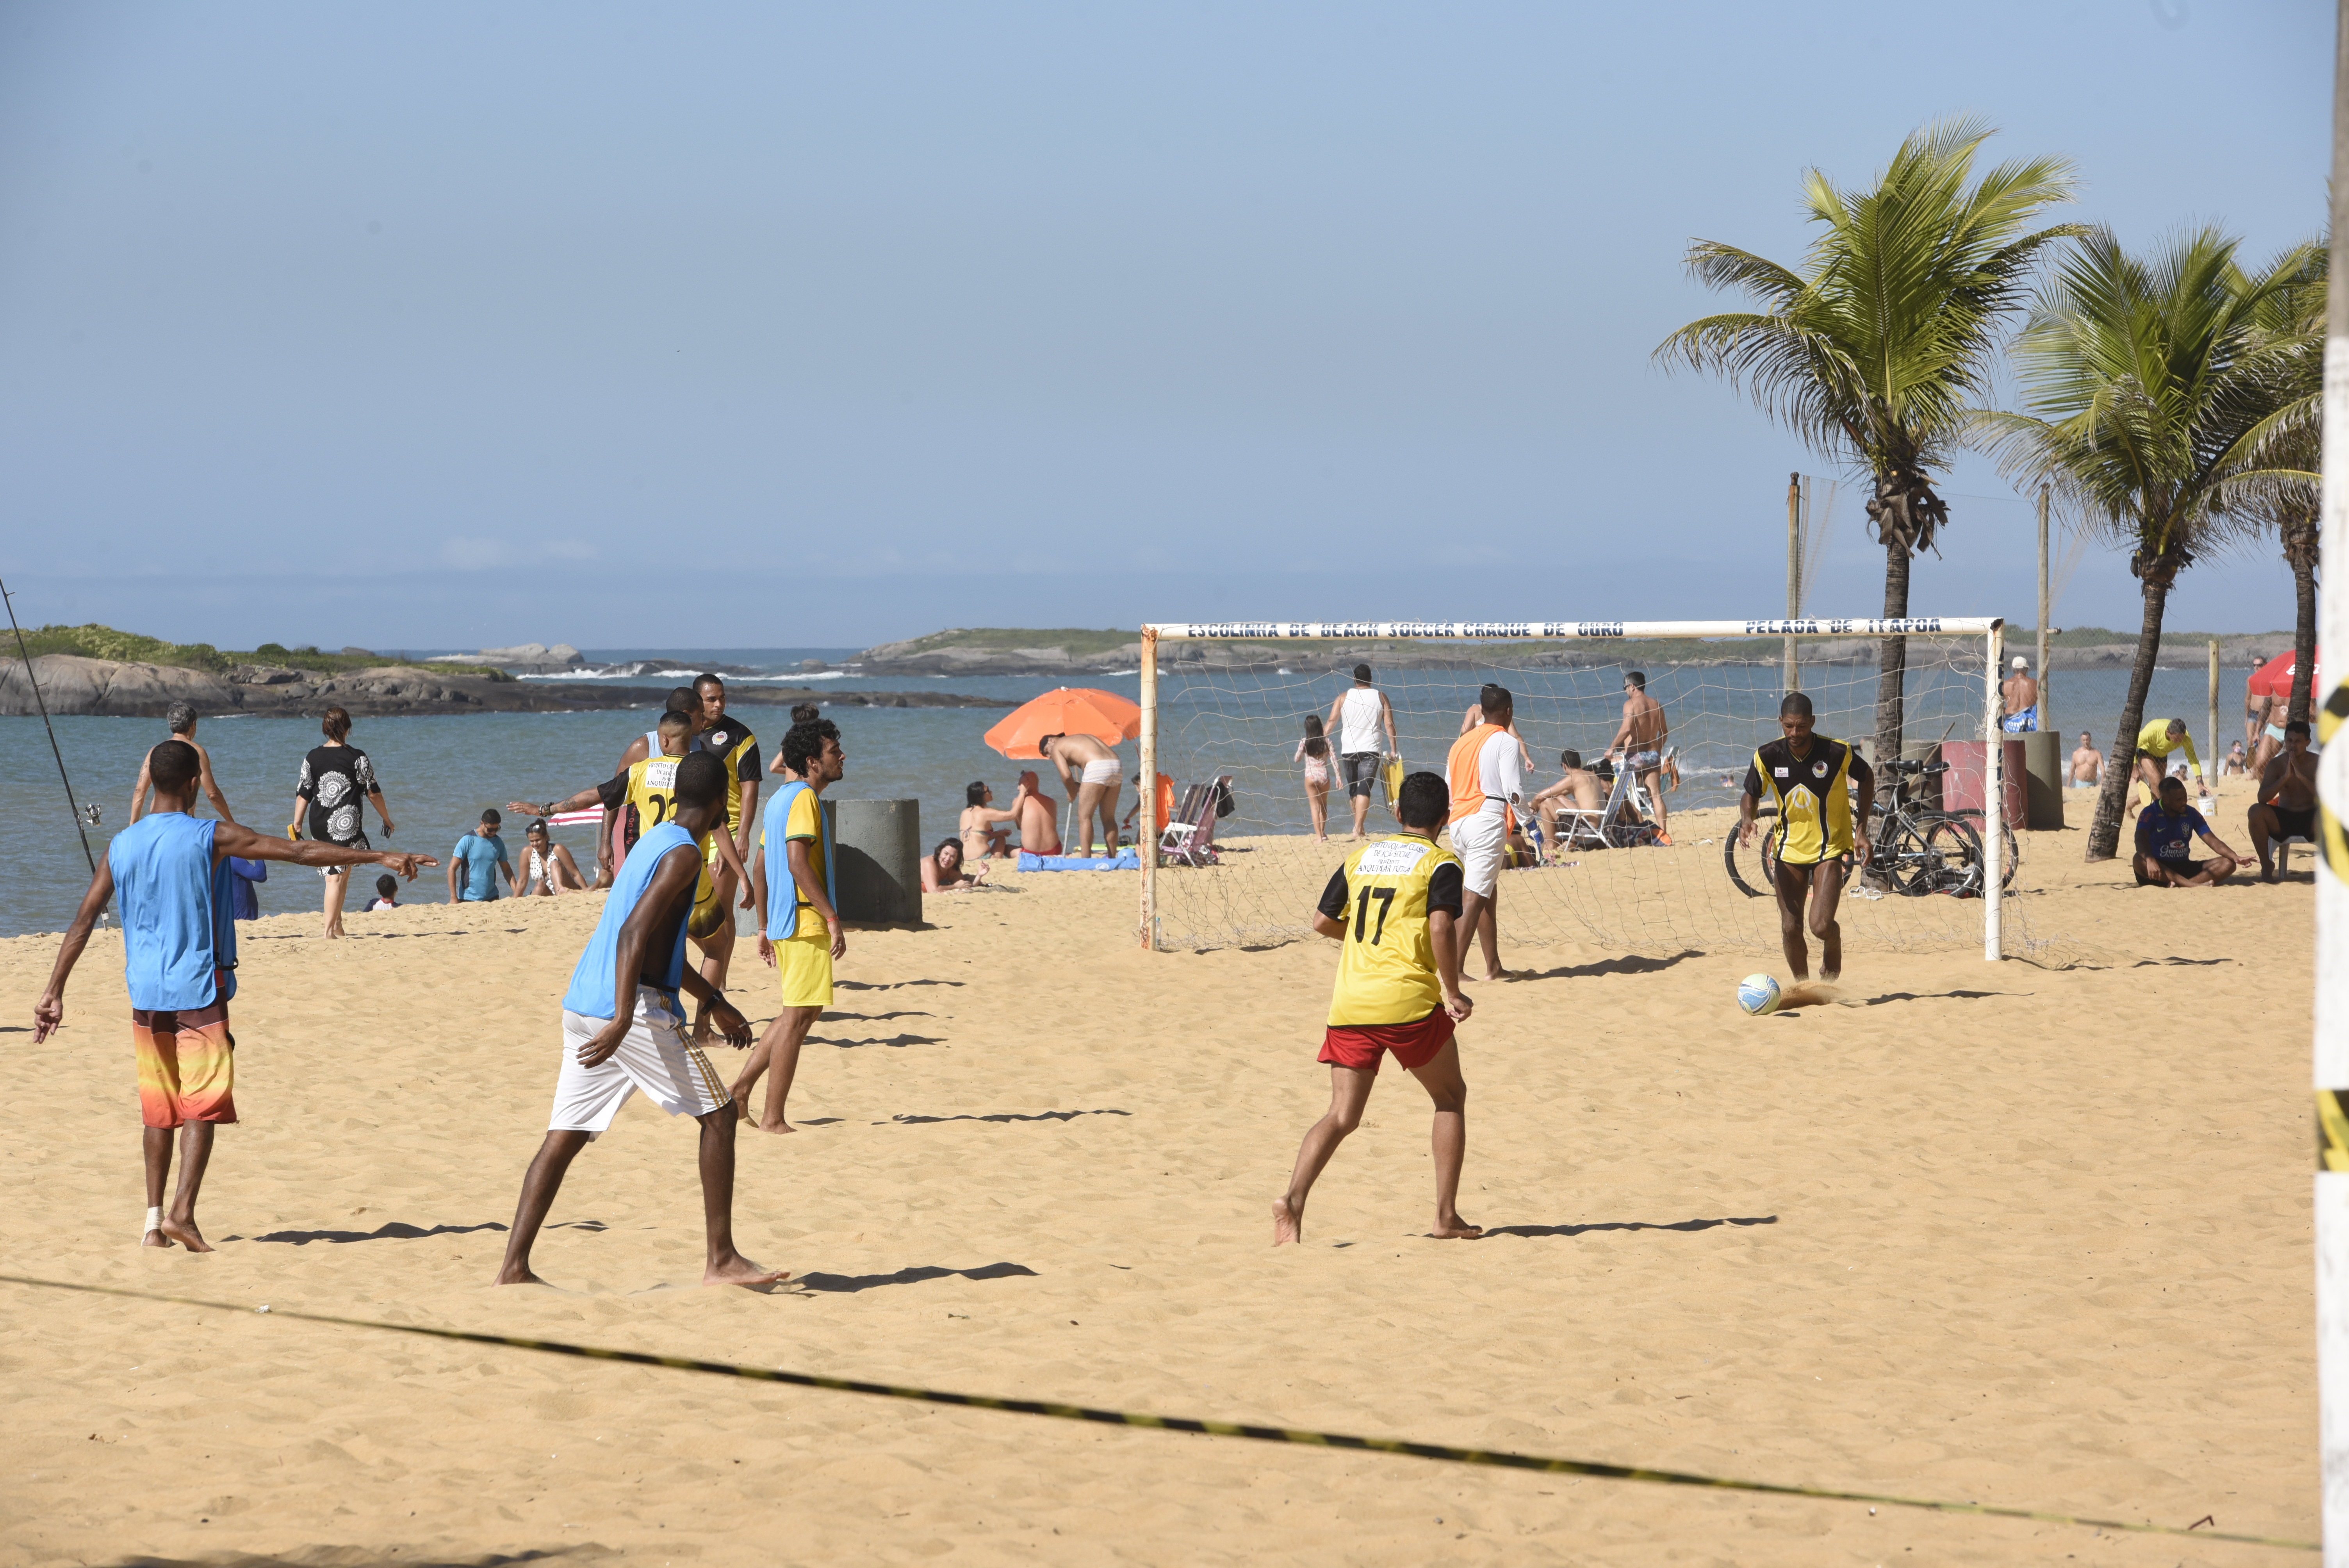 Movimento de pessoas durante a pandemia de coronavírus na Praia da Costa, Vila Velha